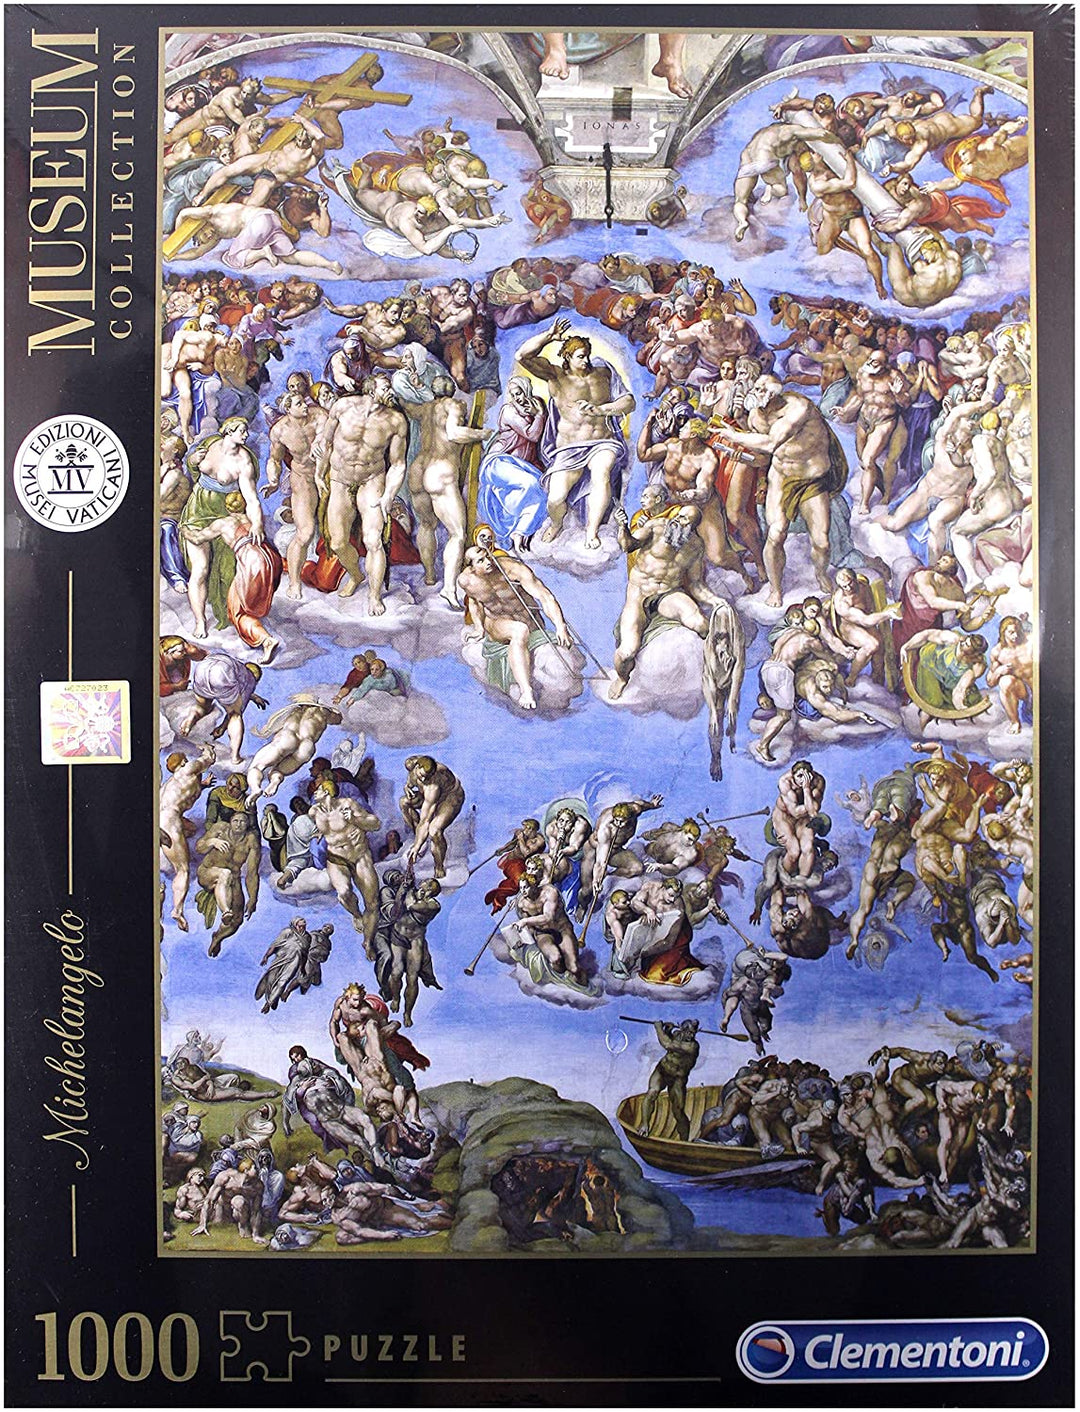 Clementoni - 39497 - Vaticaanse puzzel Michelangelo Universal Justice-1000 stukjes